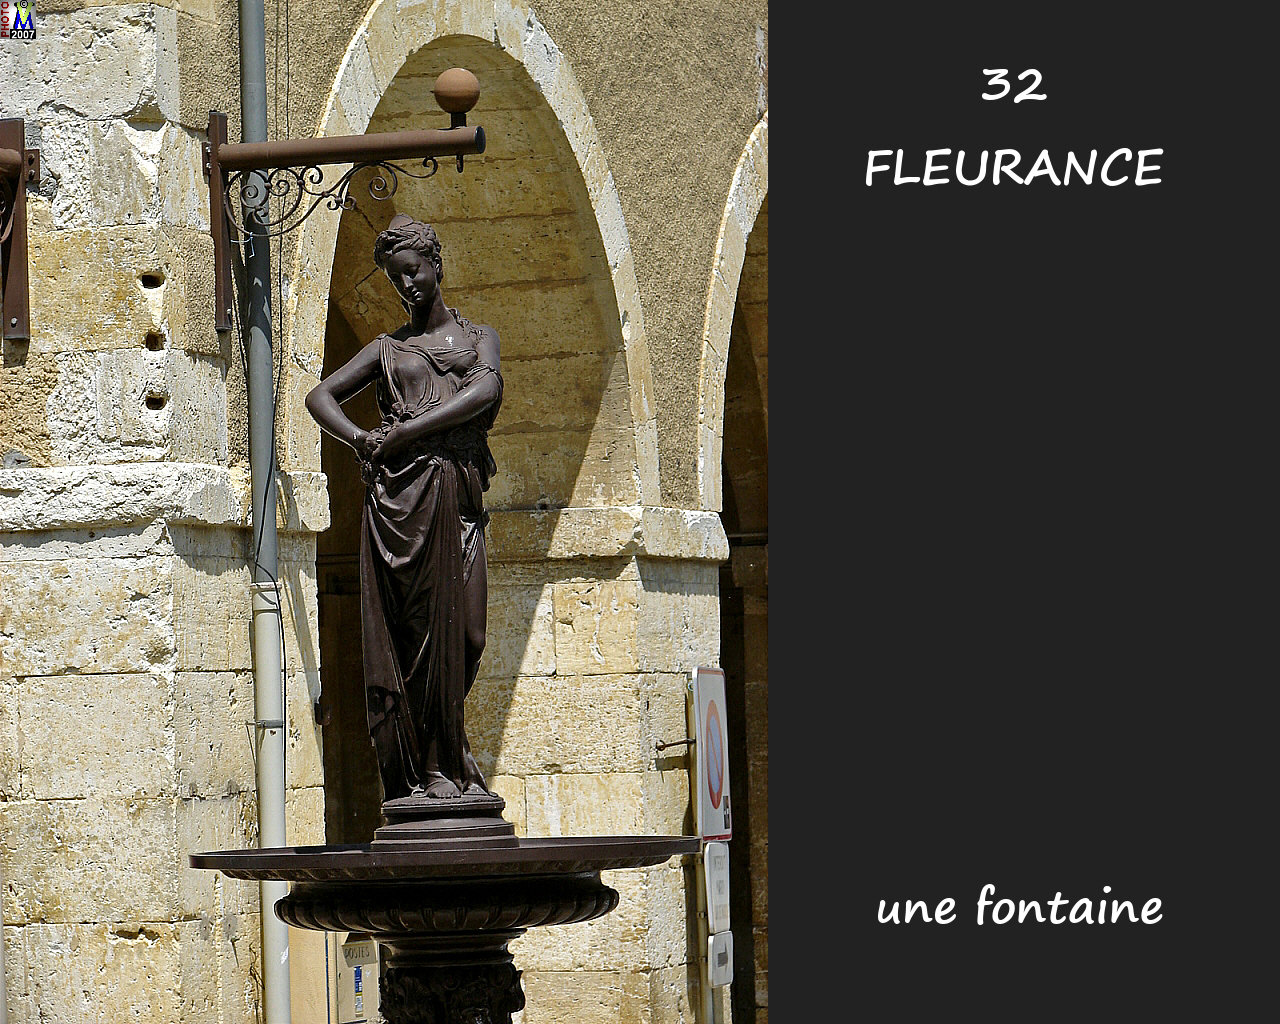 32FLEURANCE_fontaine_102.jpg